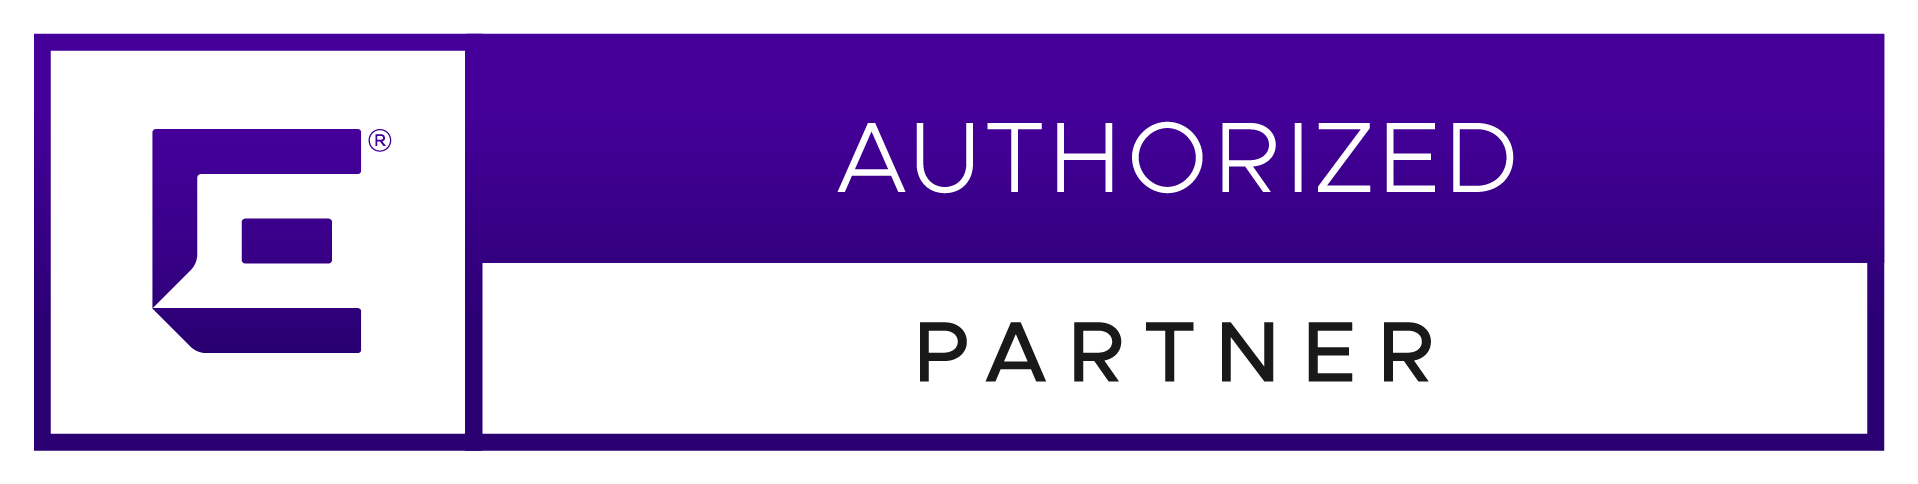 Logo Extreme Networks Authorized Partner